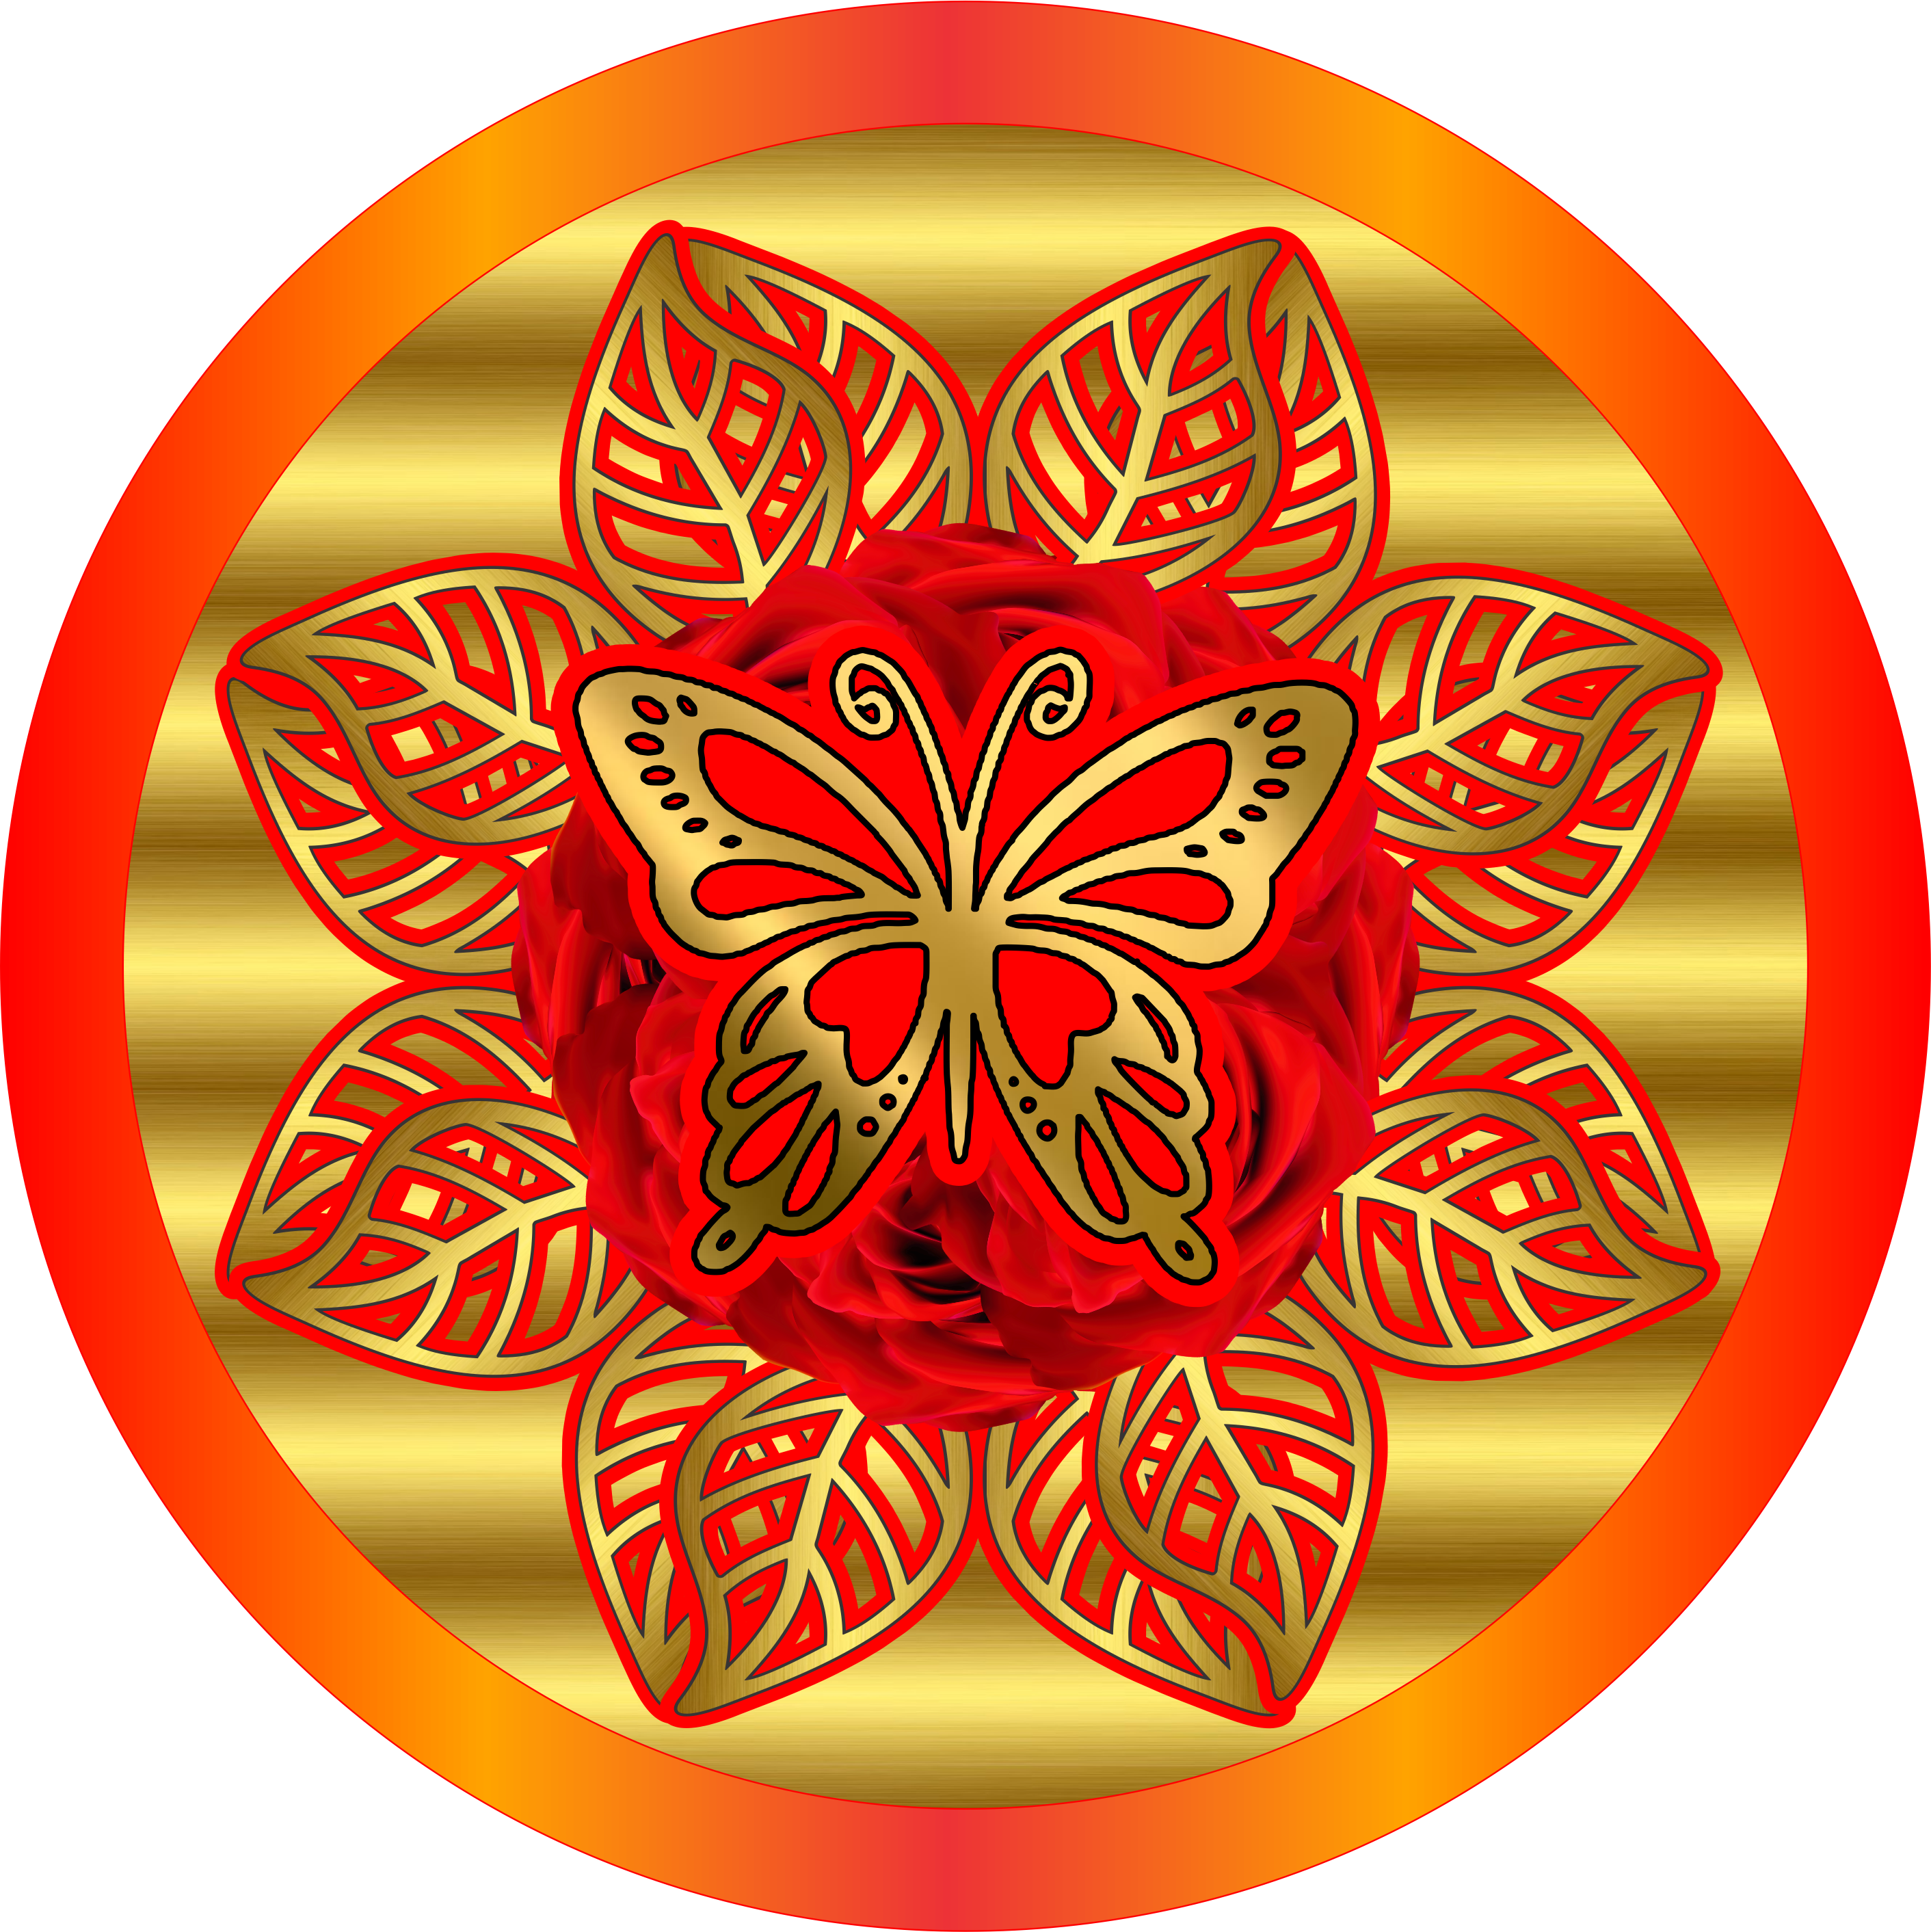 Adesivos sticker redondo dourado com flor e borboleta vermelha clipart png